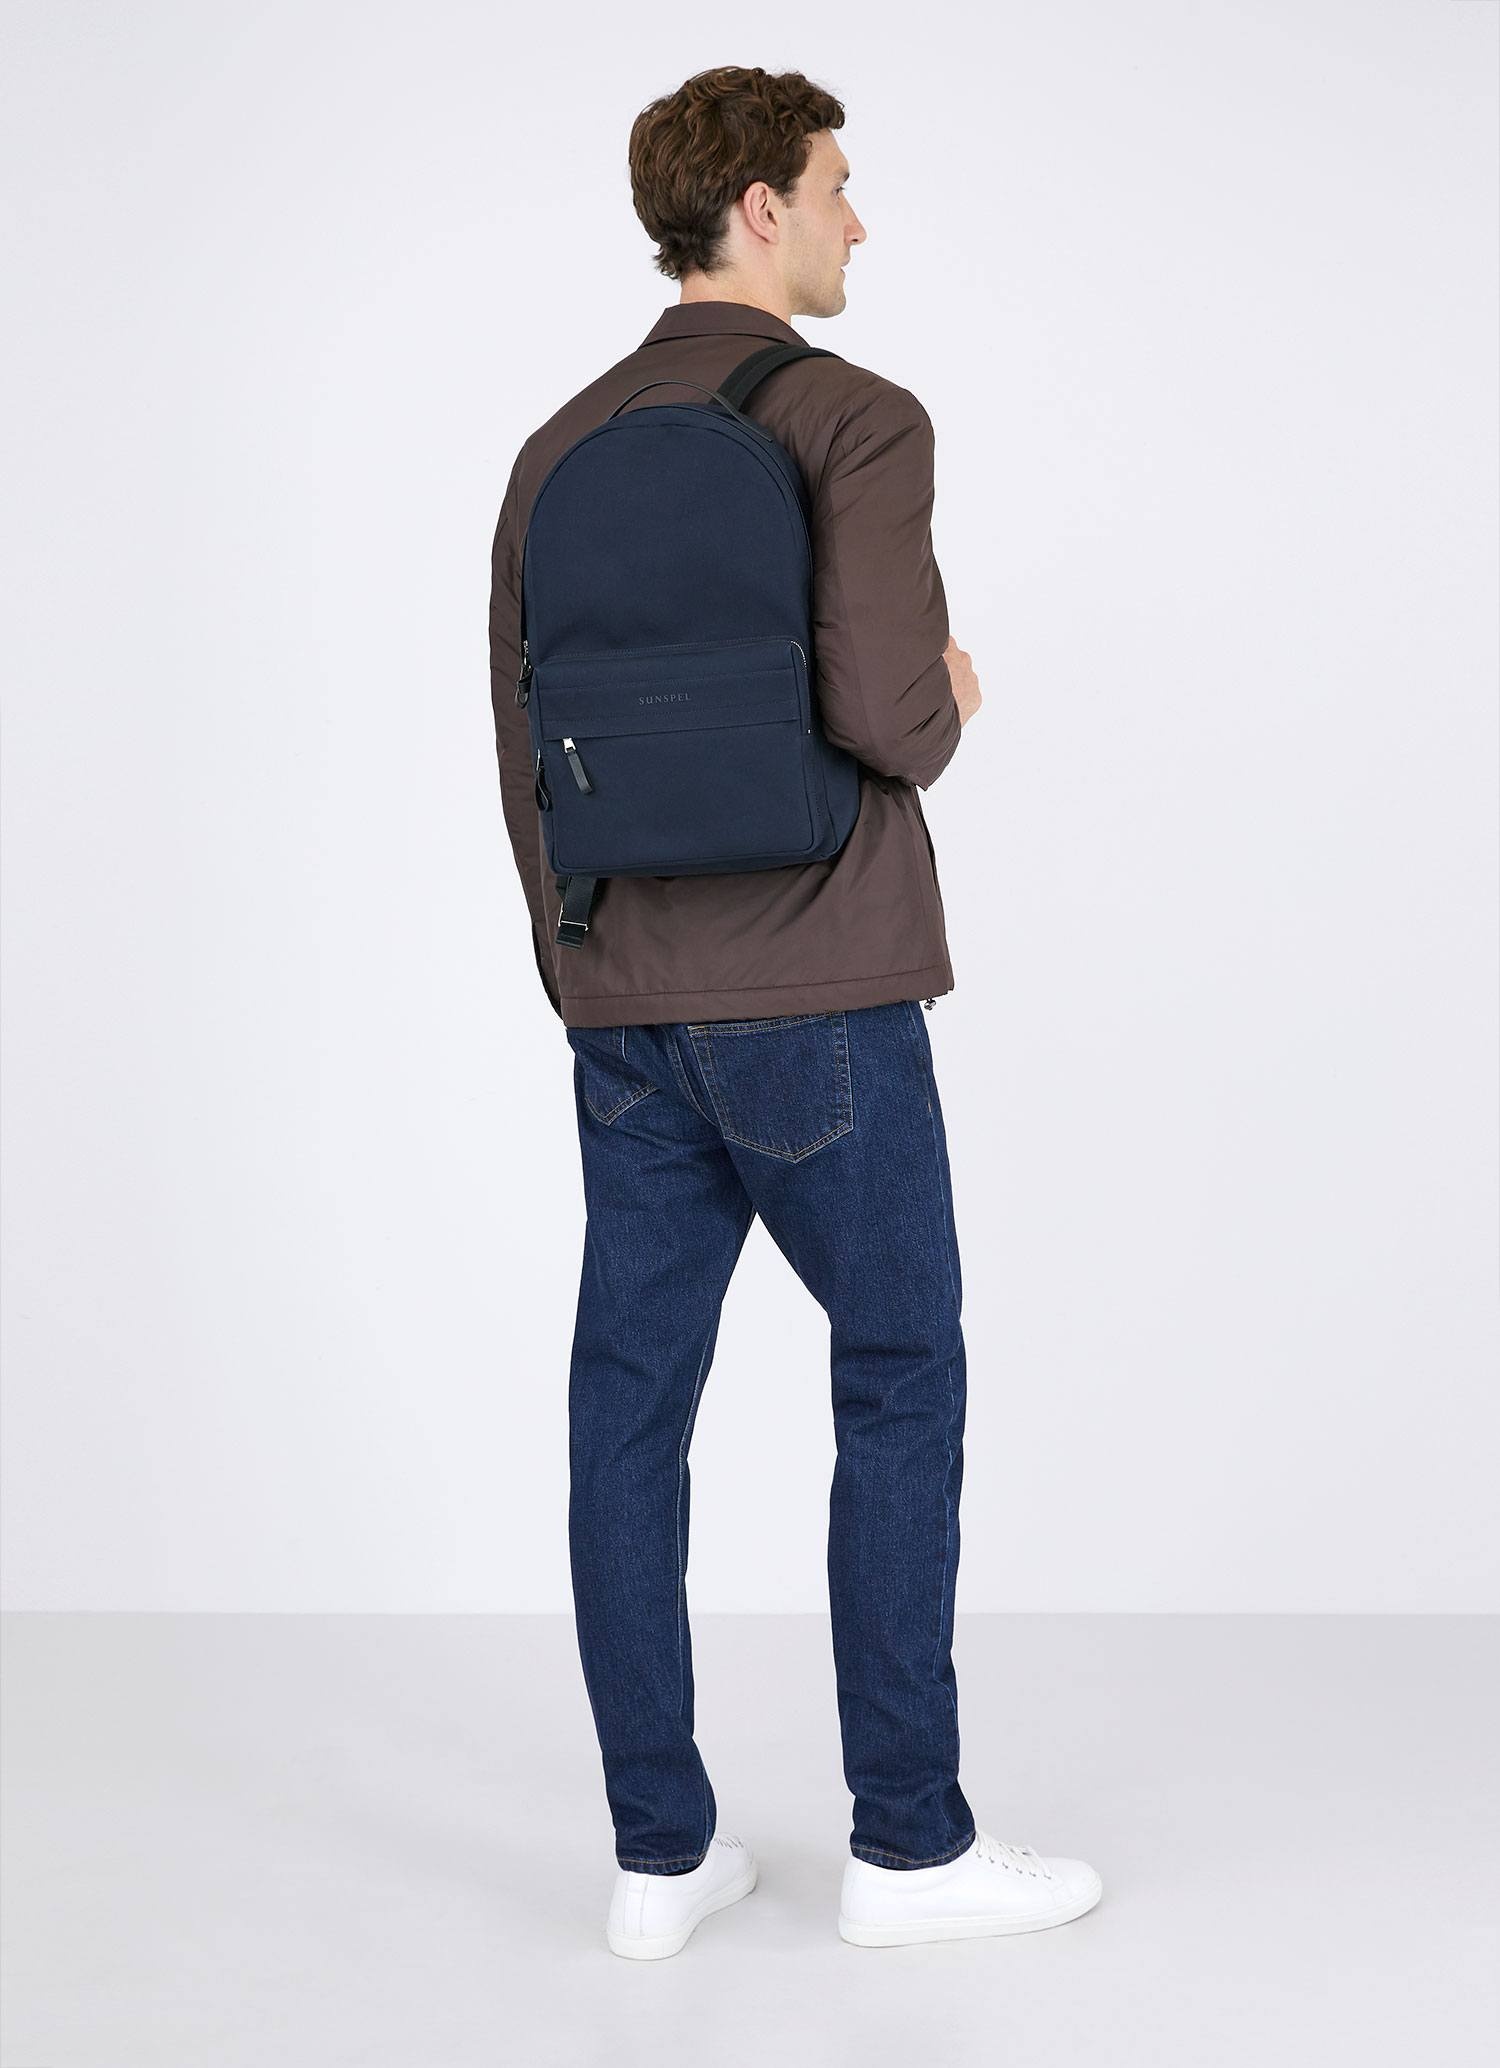 Backpack - 7